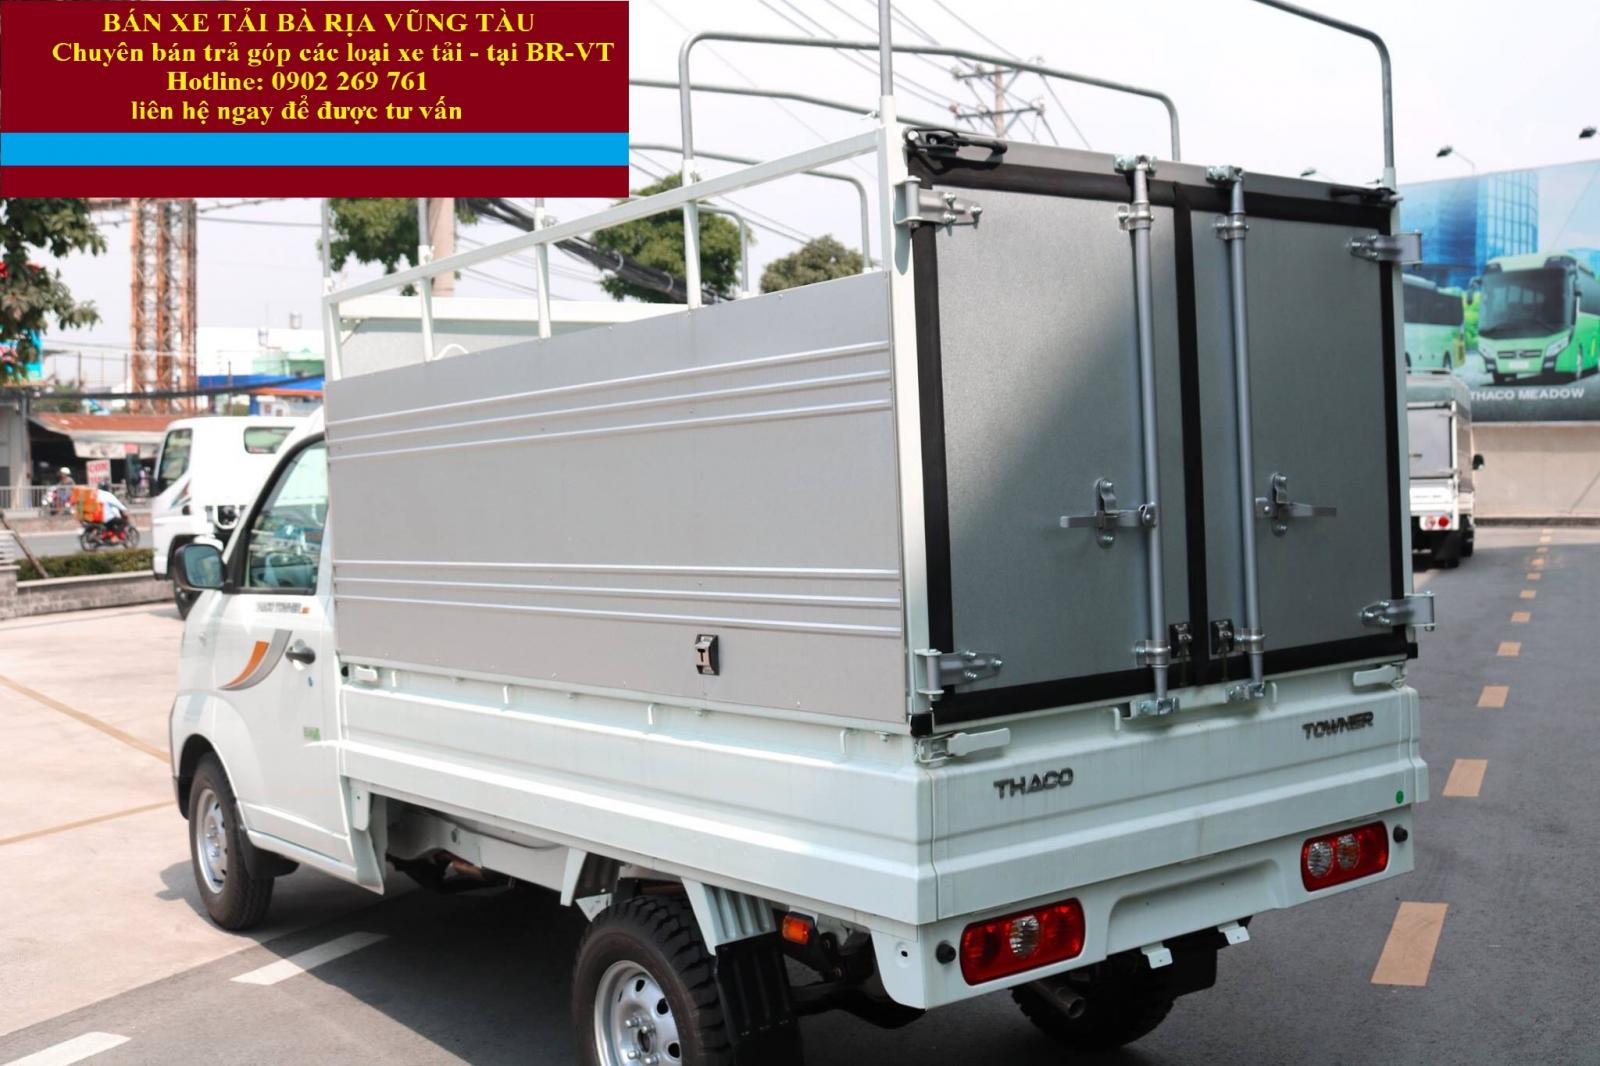 Thông tin Bán xe tải 990kg động cơ công nghệ Suzuki Nhật Bản tại Bà Rịa Vũng Tàu – Hỗ trợ trả góp xe tải CN Suzuki